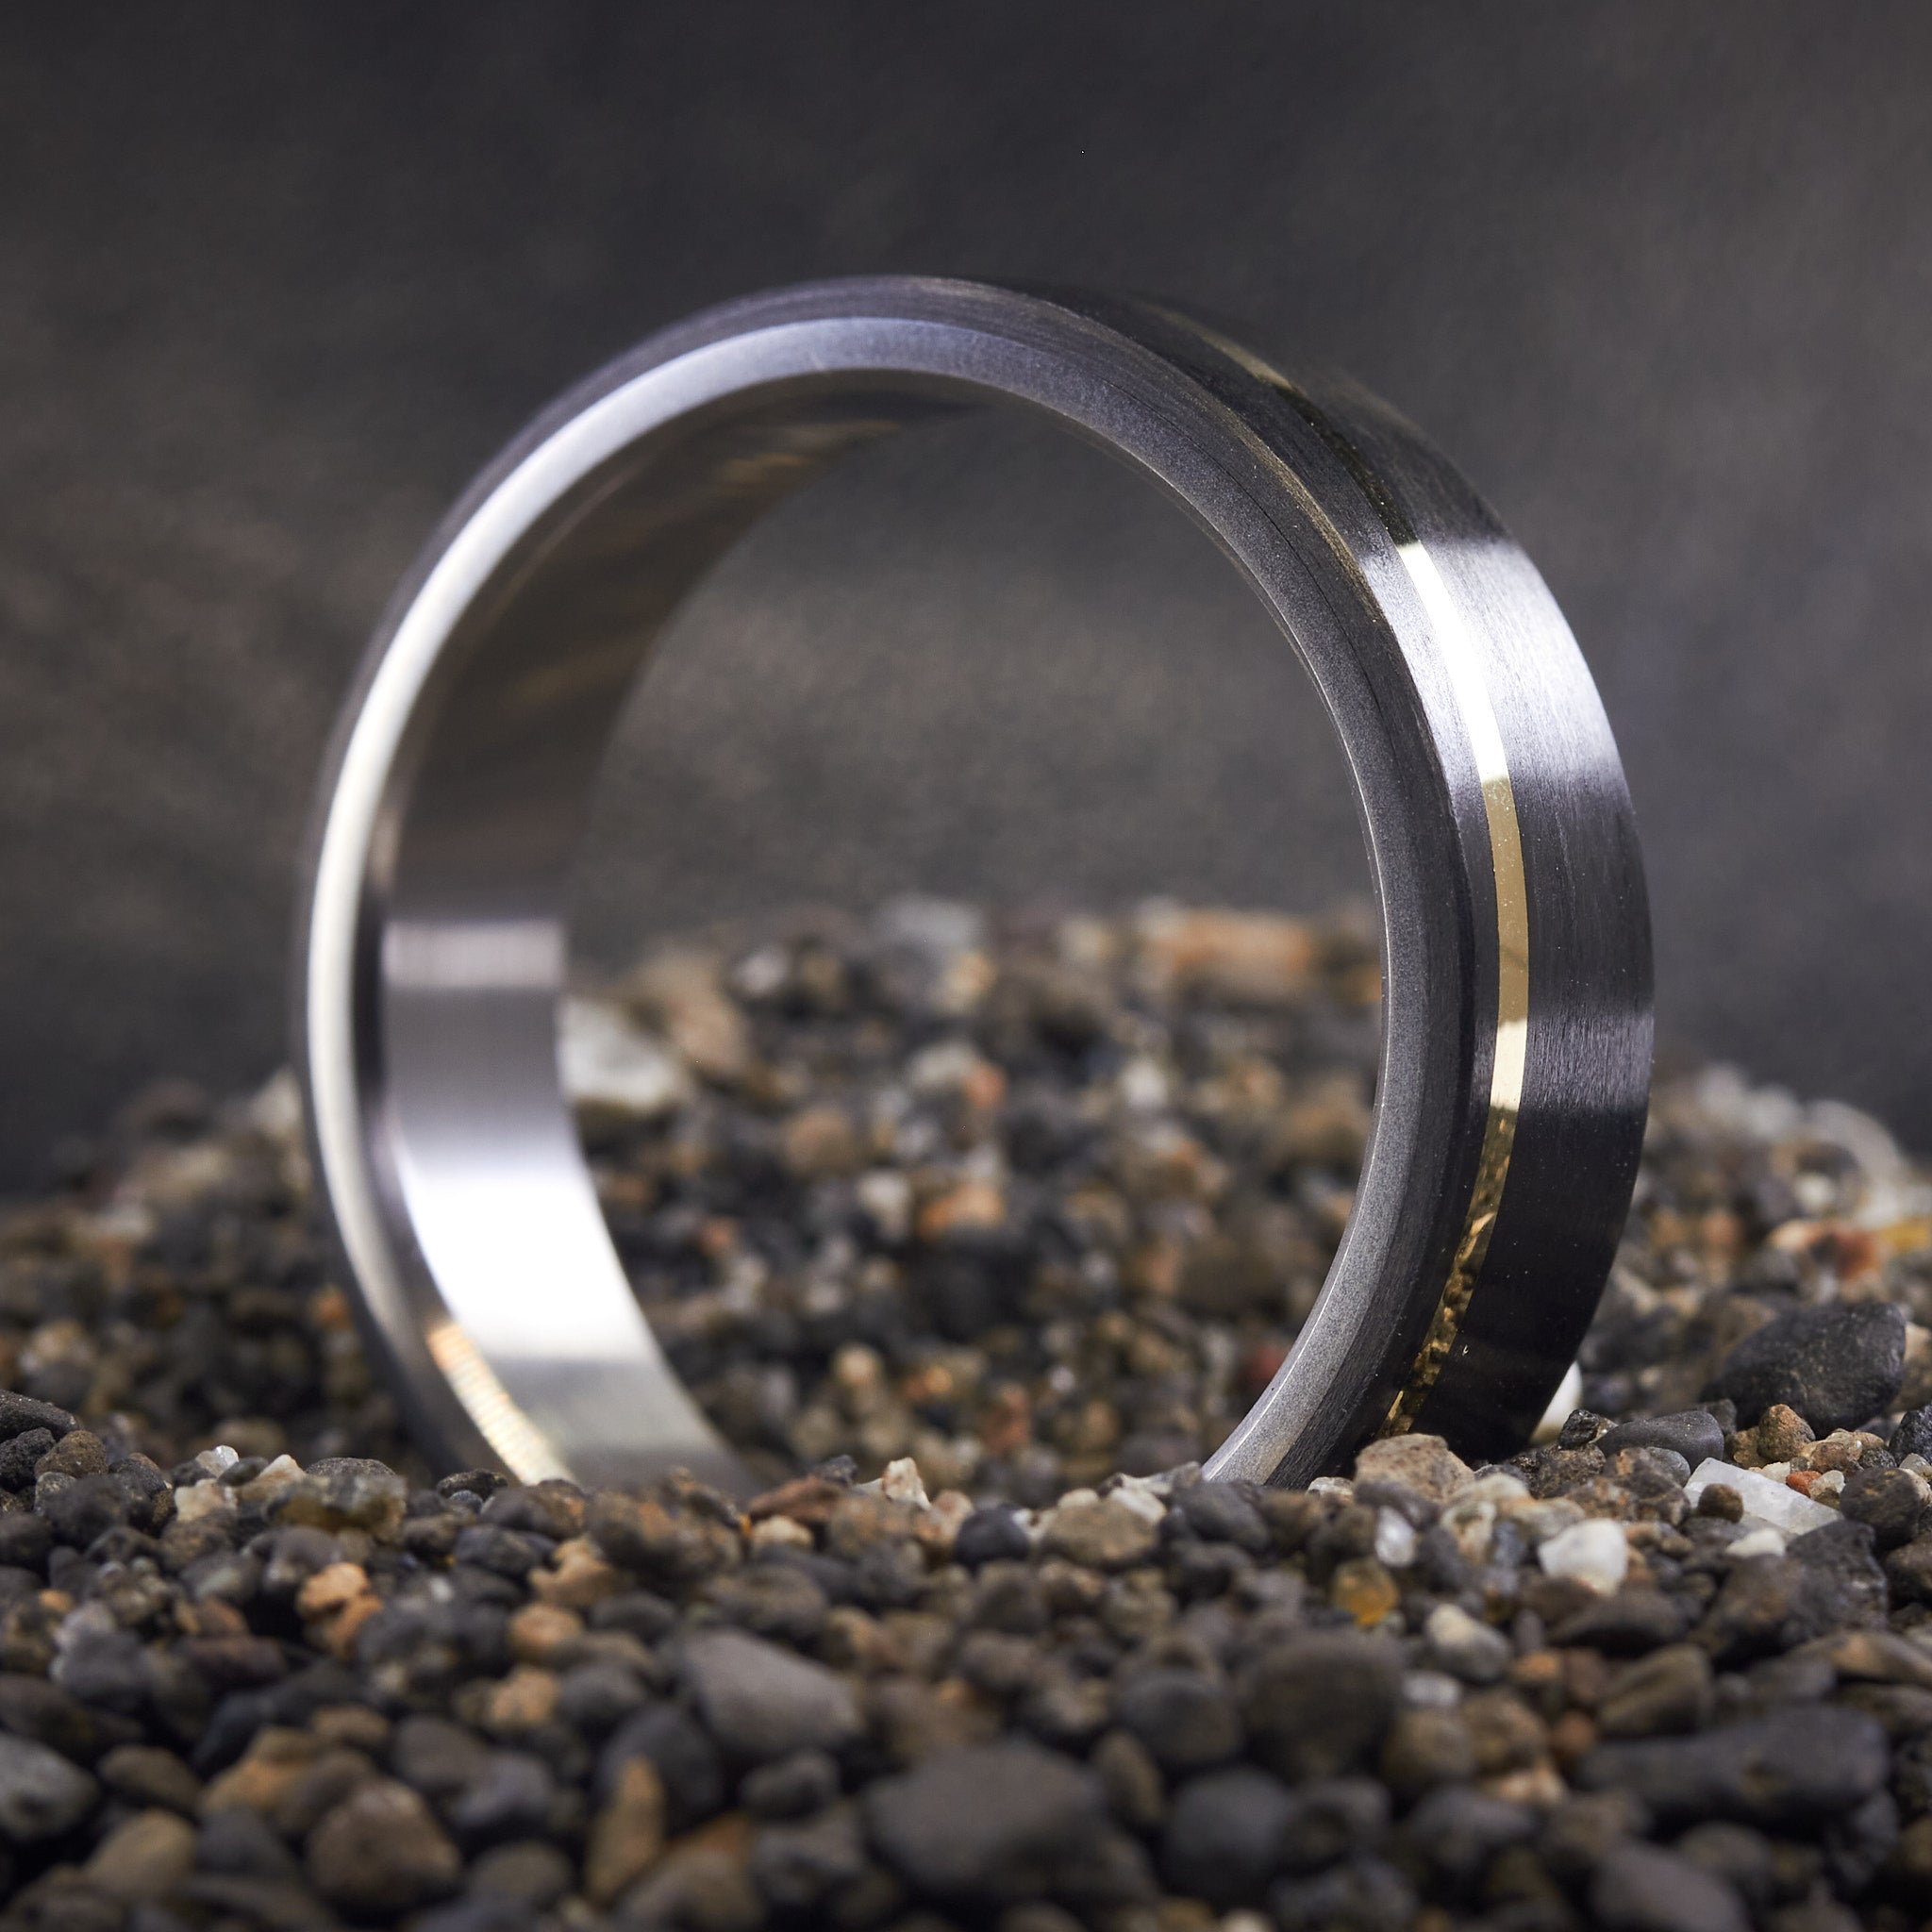 Carbon fiber, 18K GOLD and titanium Ring